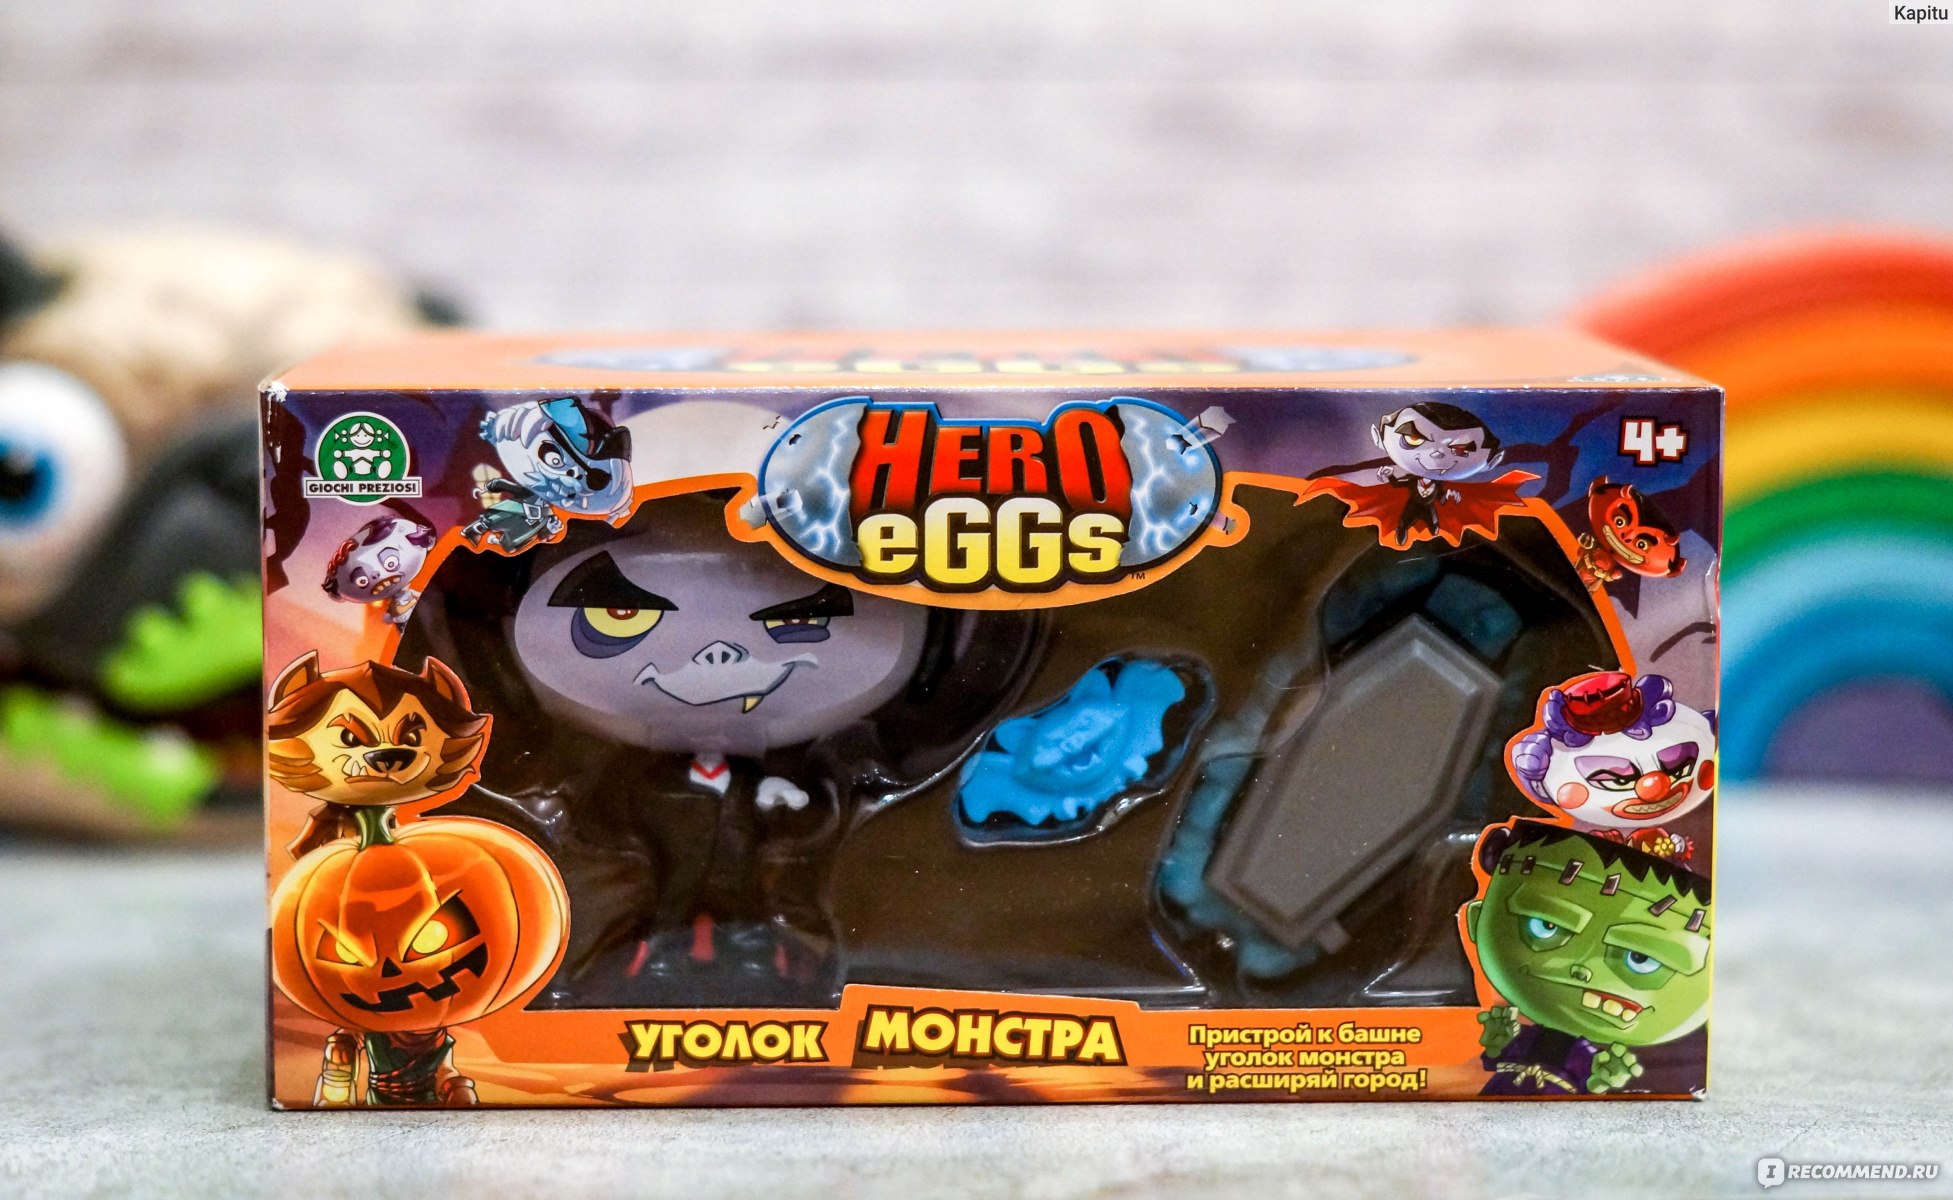 Уголок монстра Hero Eggs